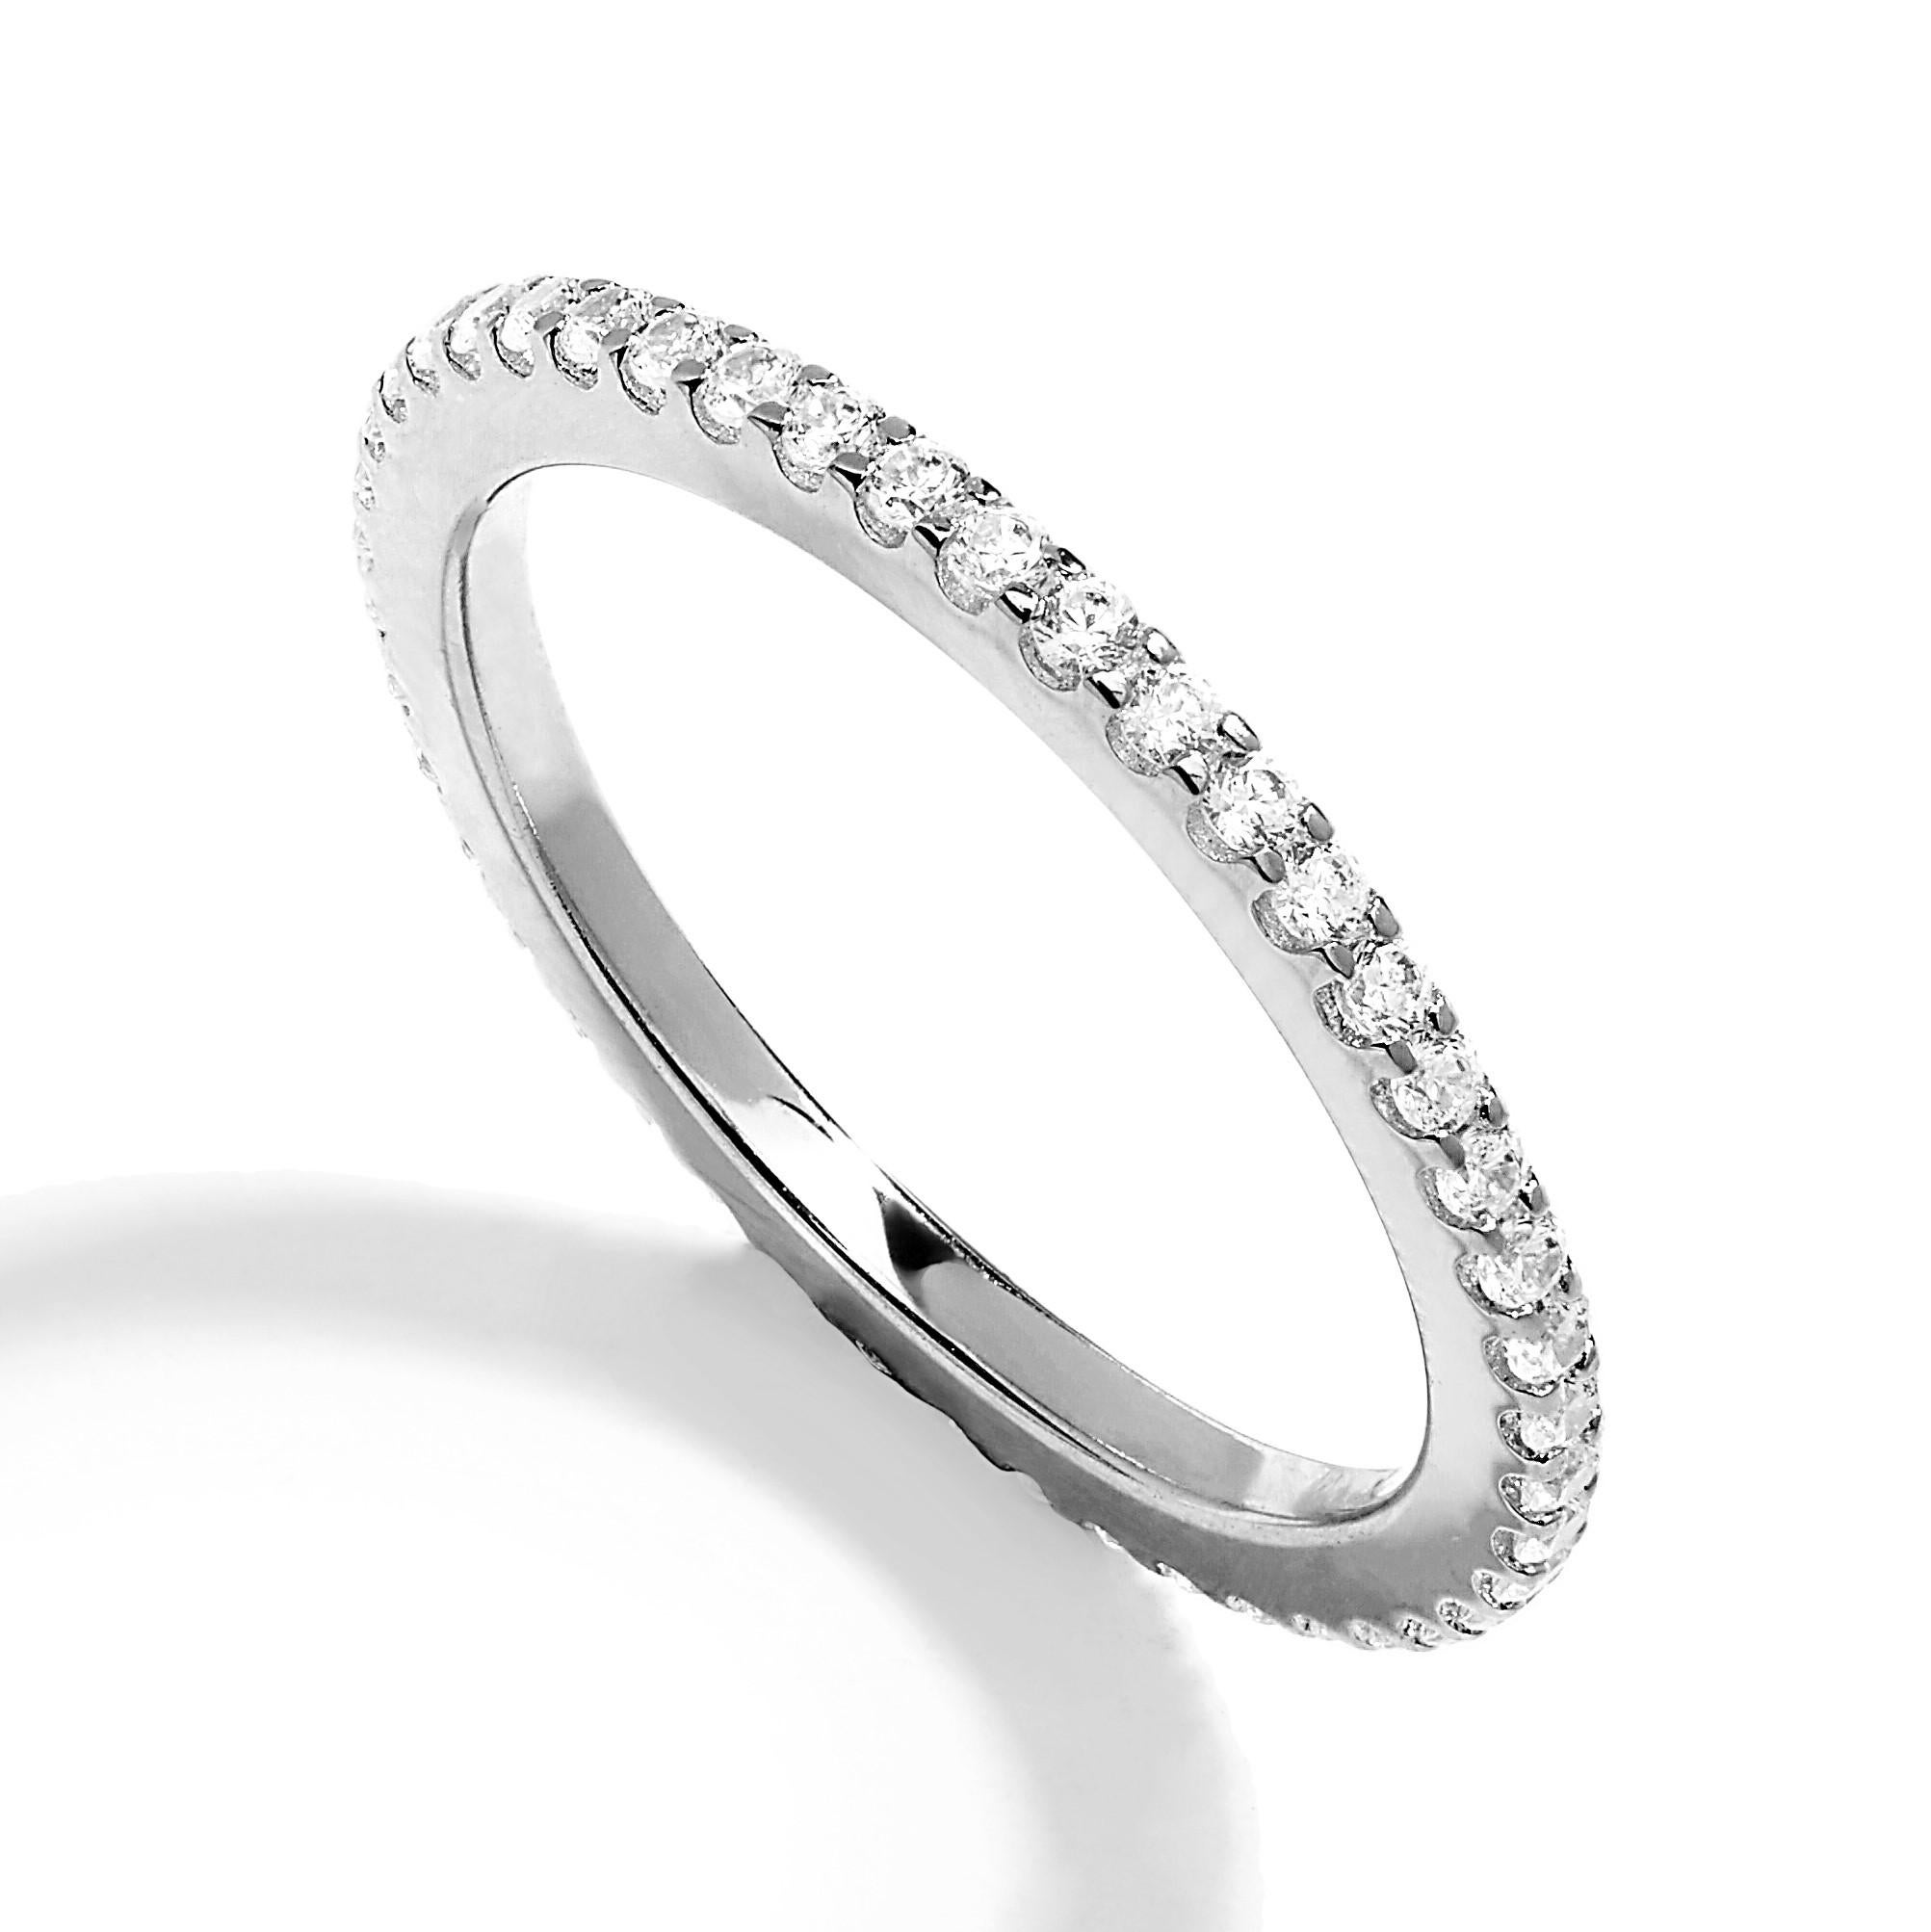 Einer unserer meistverkauften zeitlosen Ringe für die ganze Ewigkeit aus rhodiniertem, Roségold oder Gelbgold. Tragen Sie ein, zwei oder drei Ringe insgesamt für einen trendigen, gestapelten Look.

Ein wunderschöner klassischer Ring, der bequem und